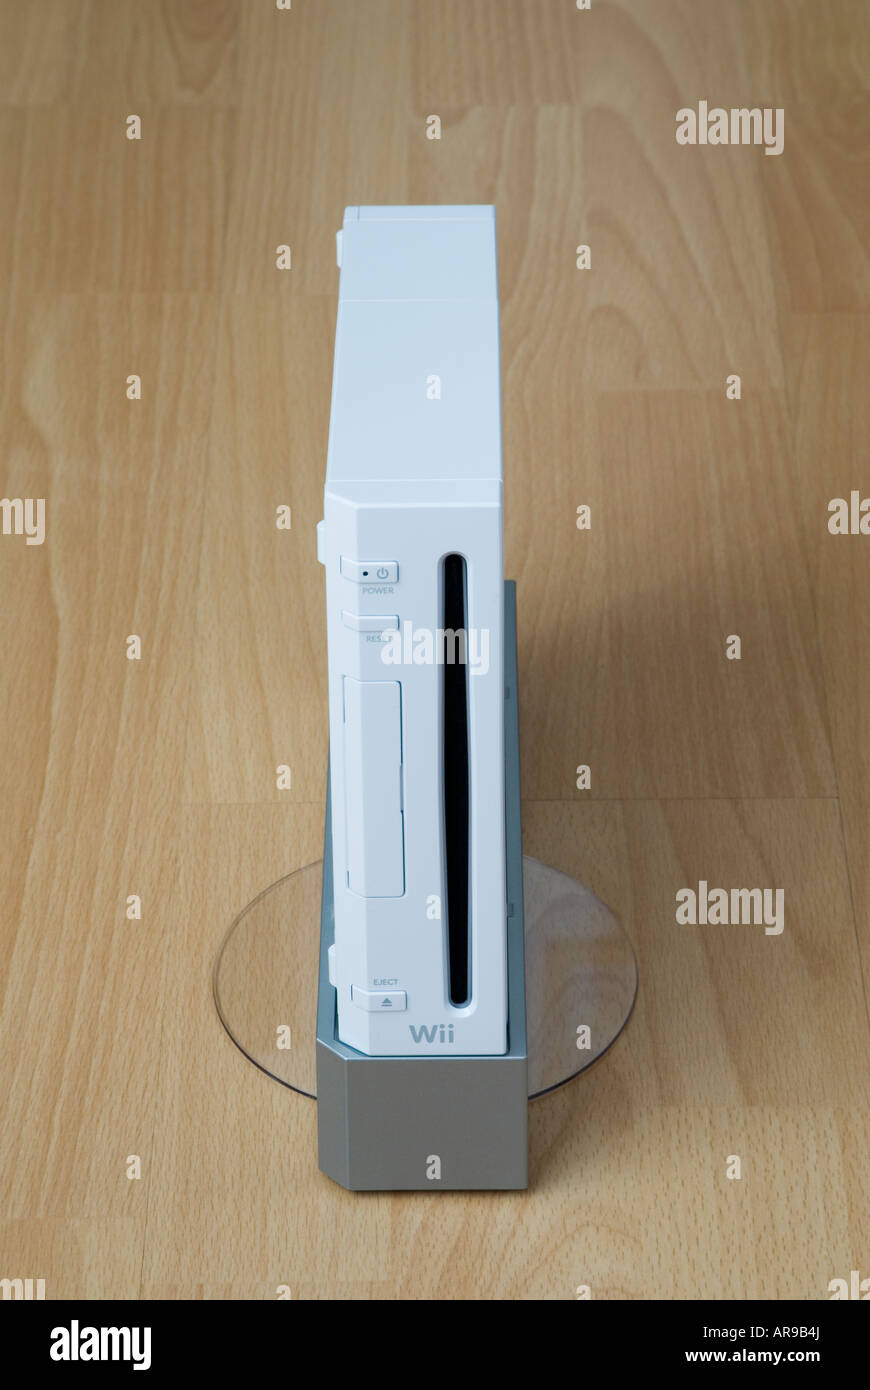 Consola Nintendo Wii en el Stand Fotografía de stock - Alamy